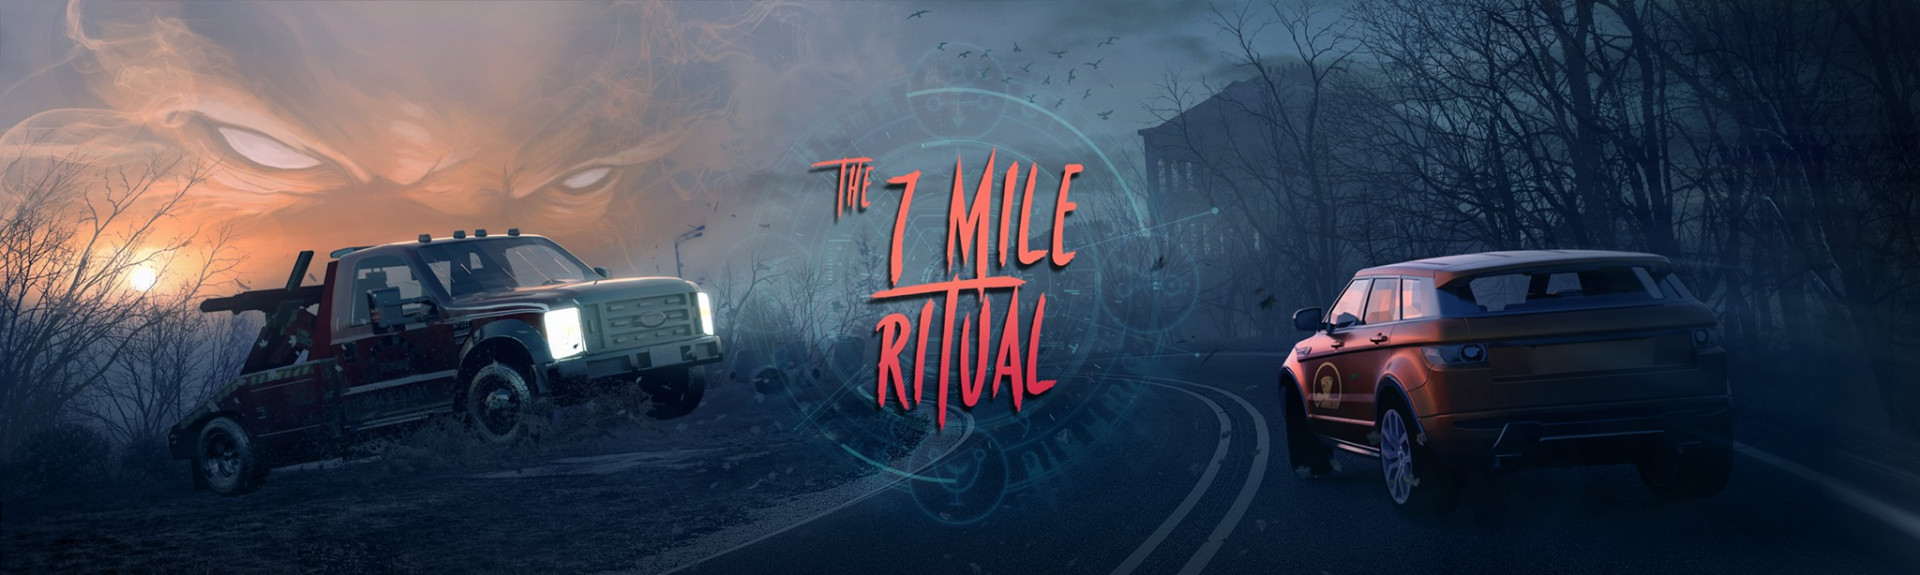 The 7 Mile Ritual